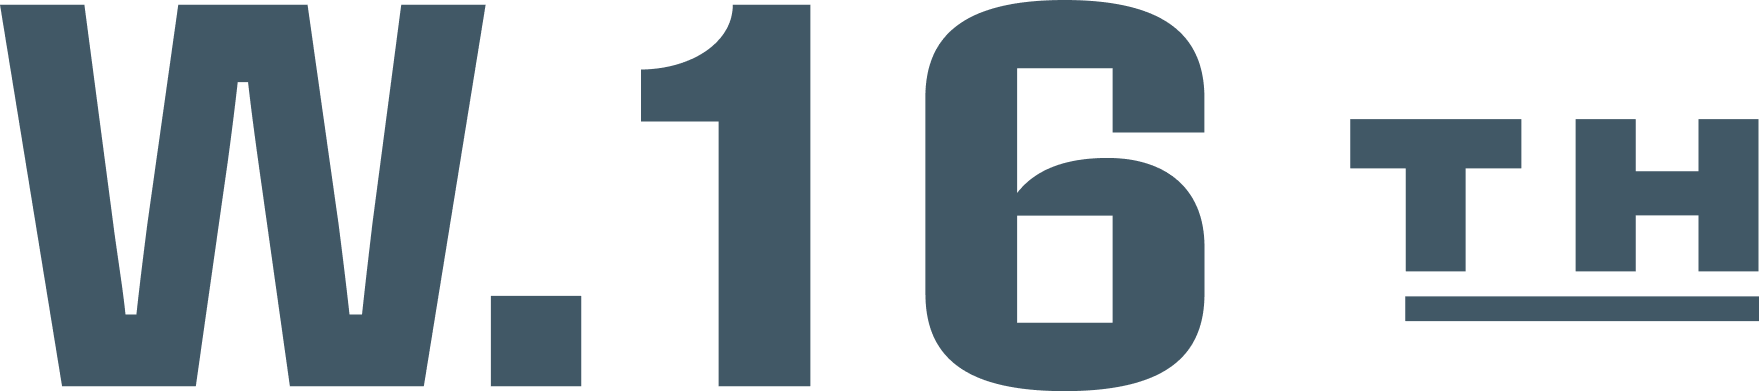 West 16th logo